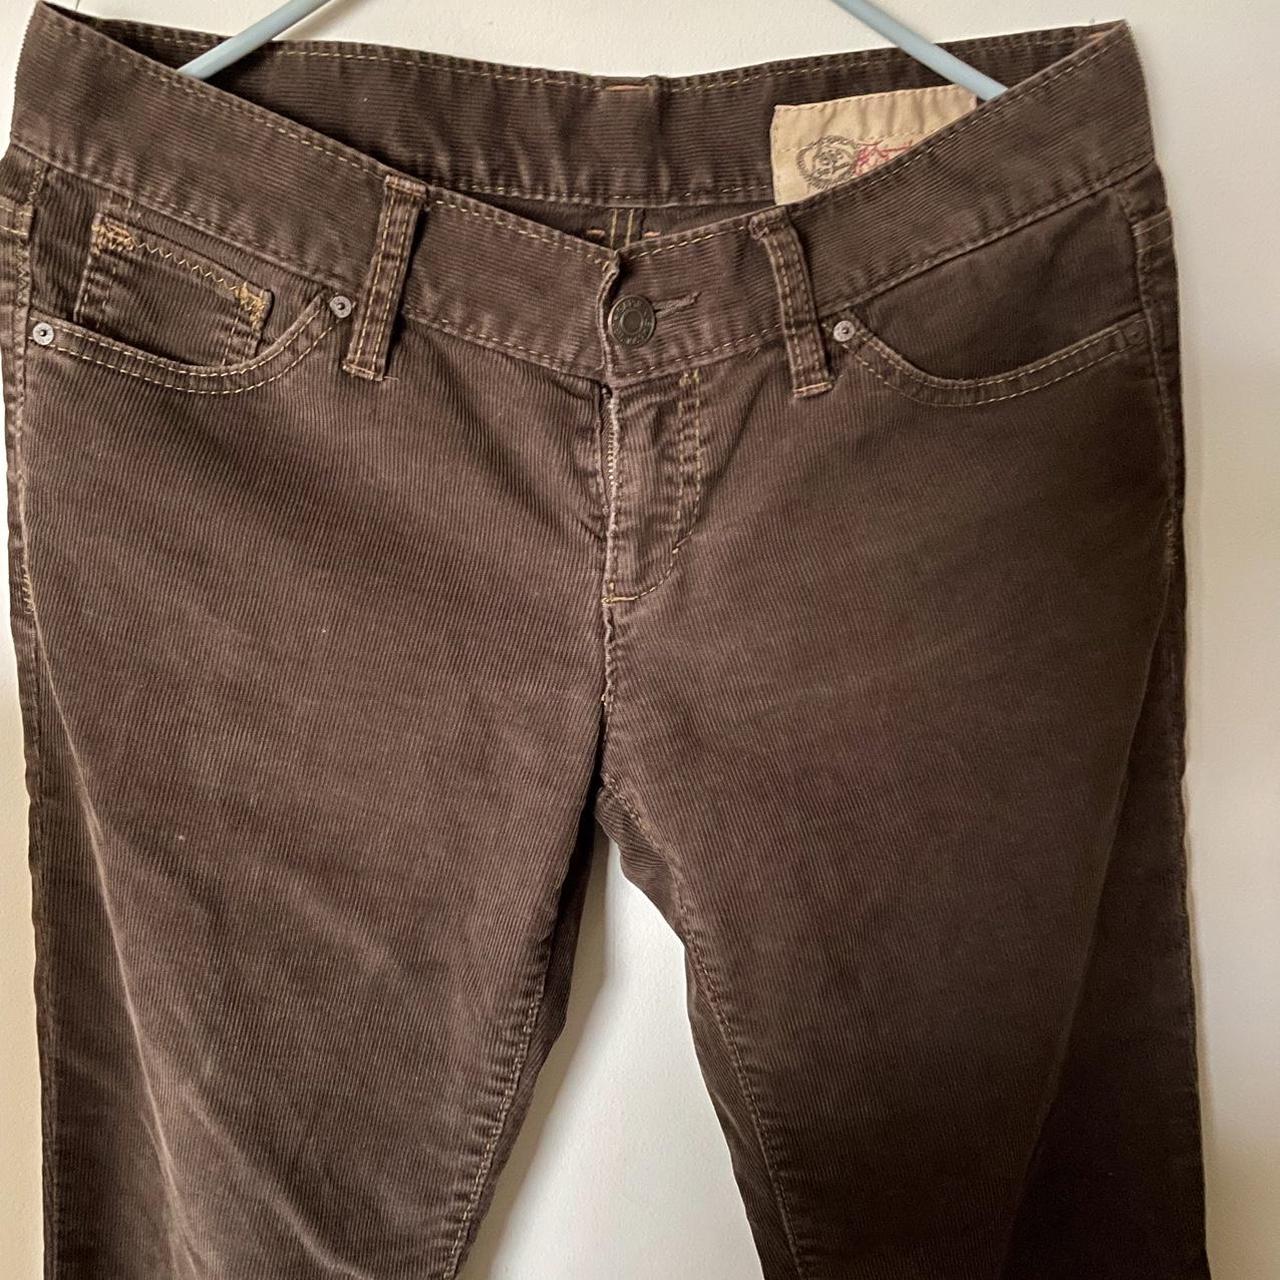 Vintage Gap Limited Edition Brown Corduroy pants.... - Depop